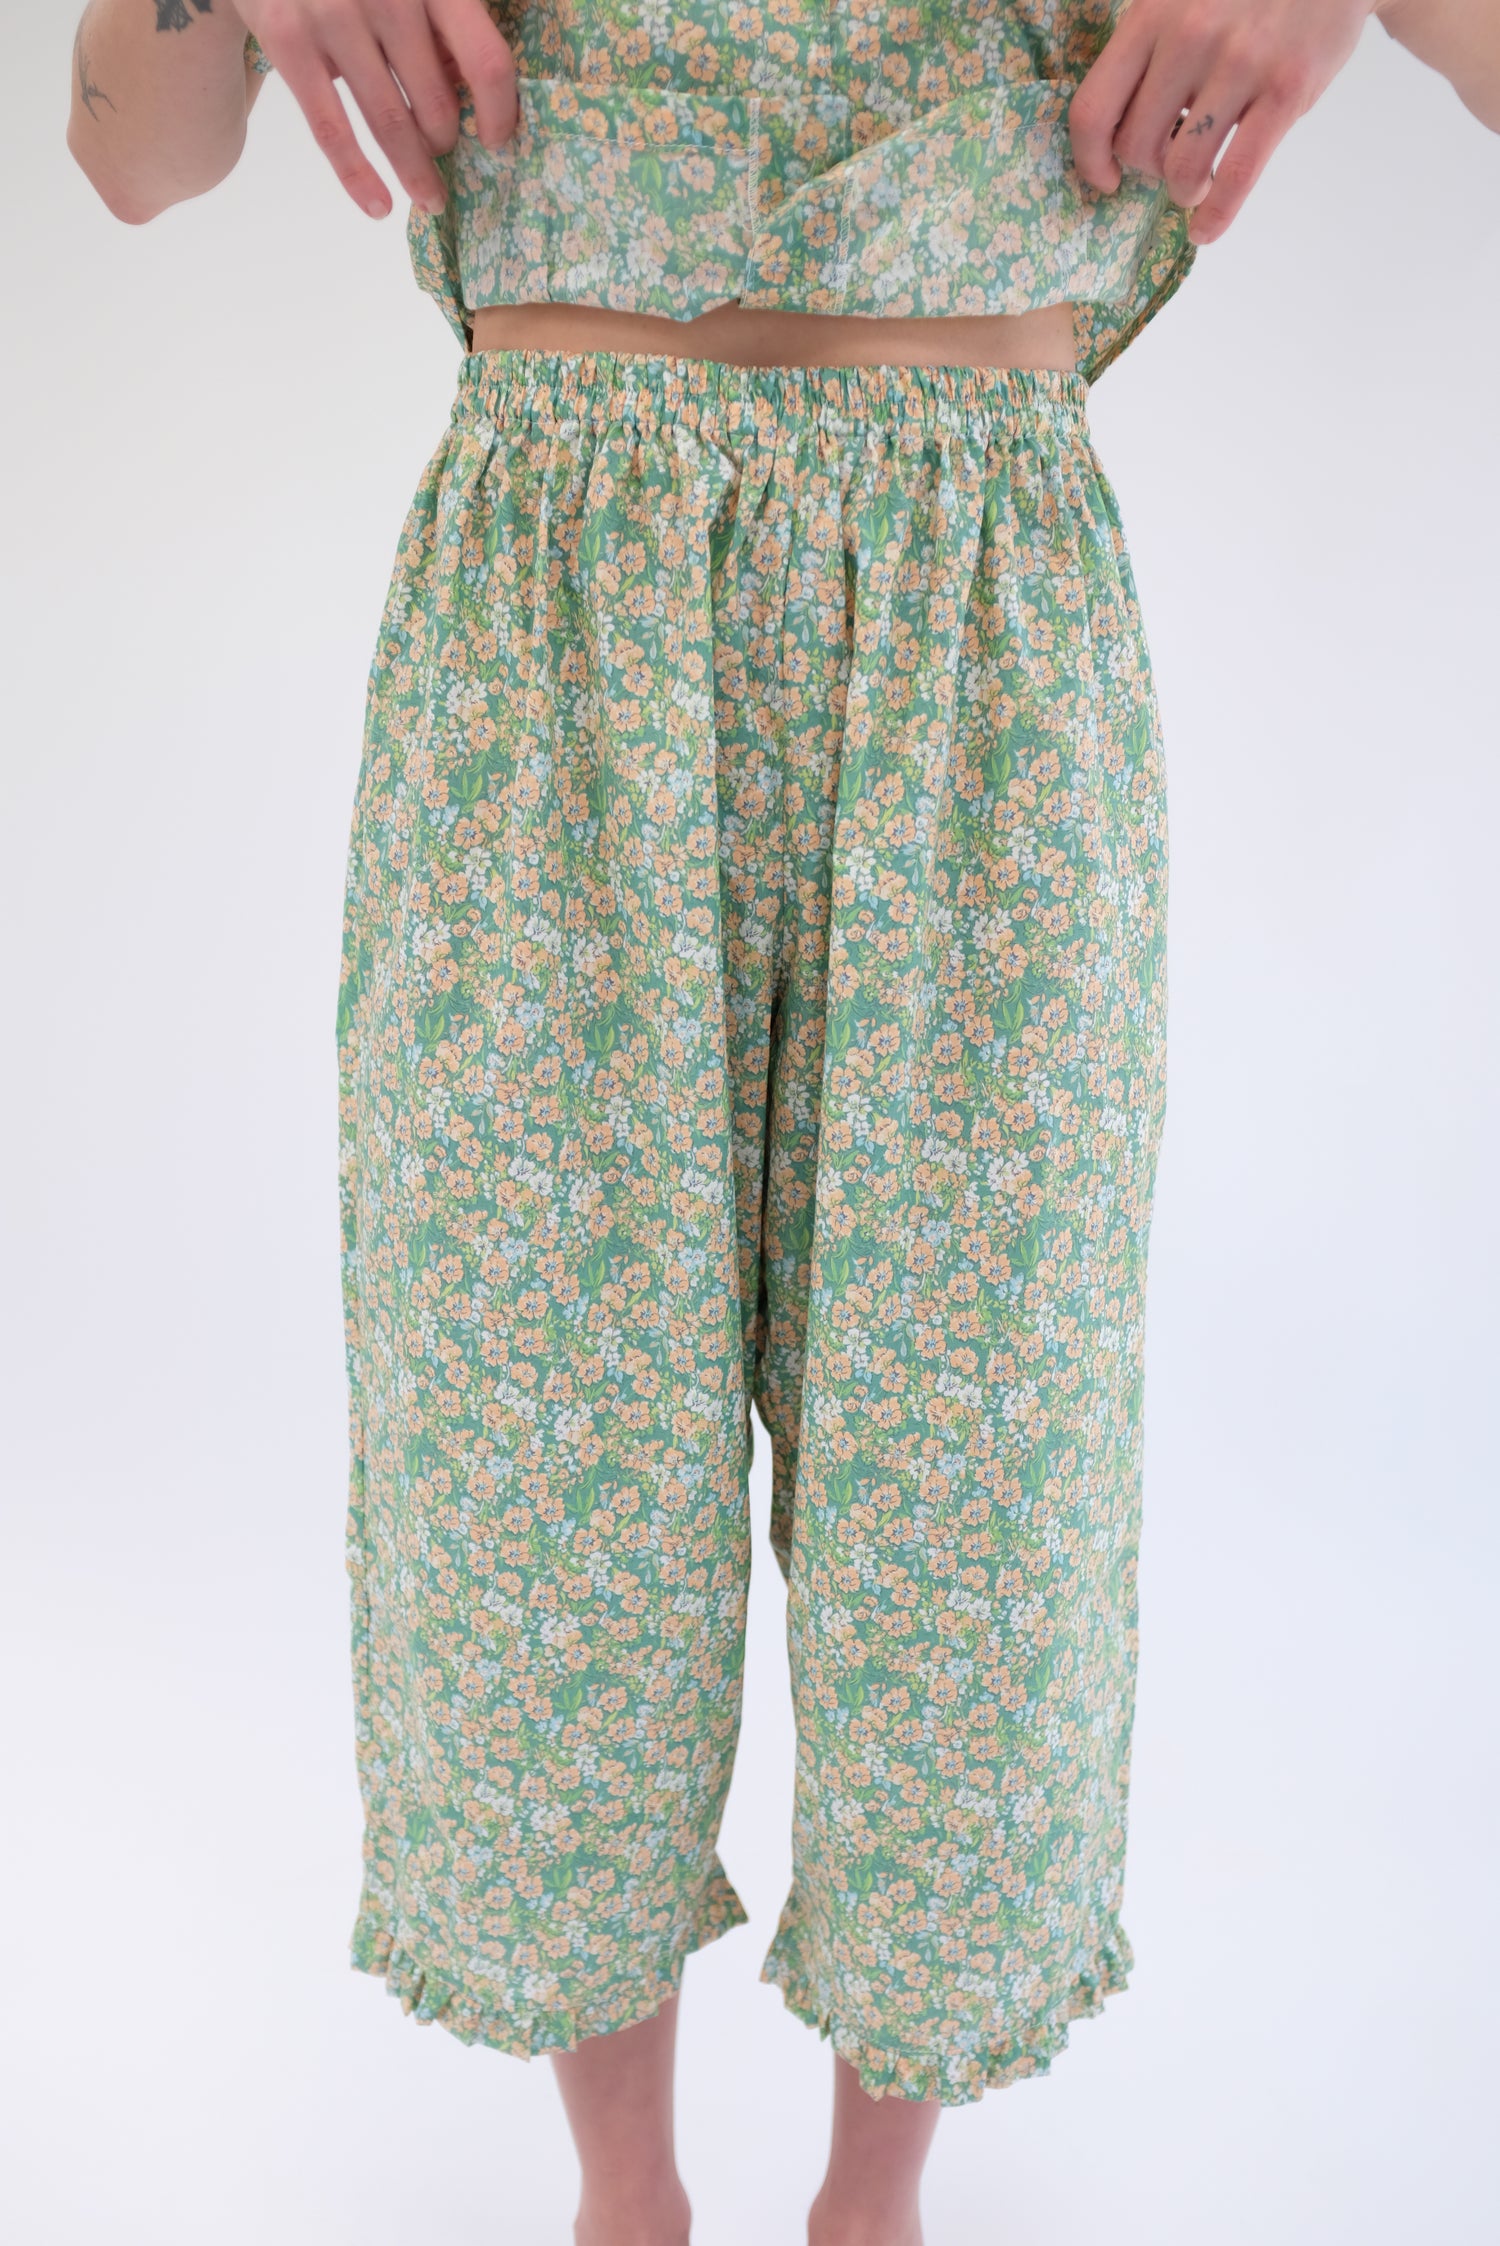 Beklina Okinawa Pajama Pant Herb Floral